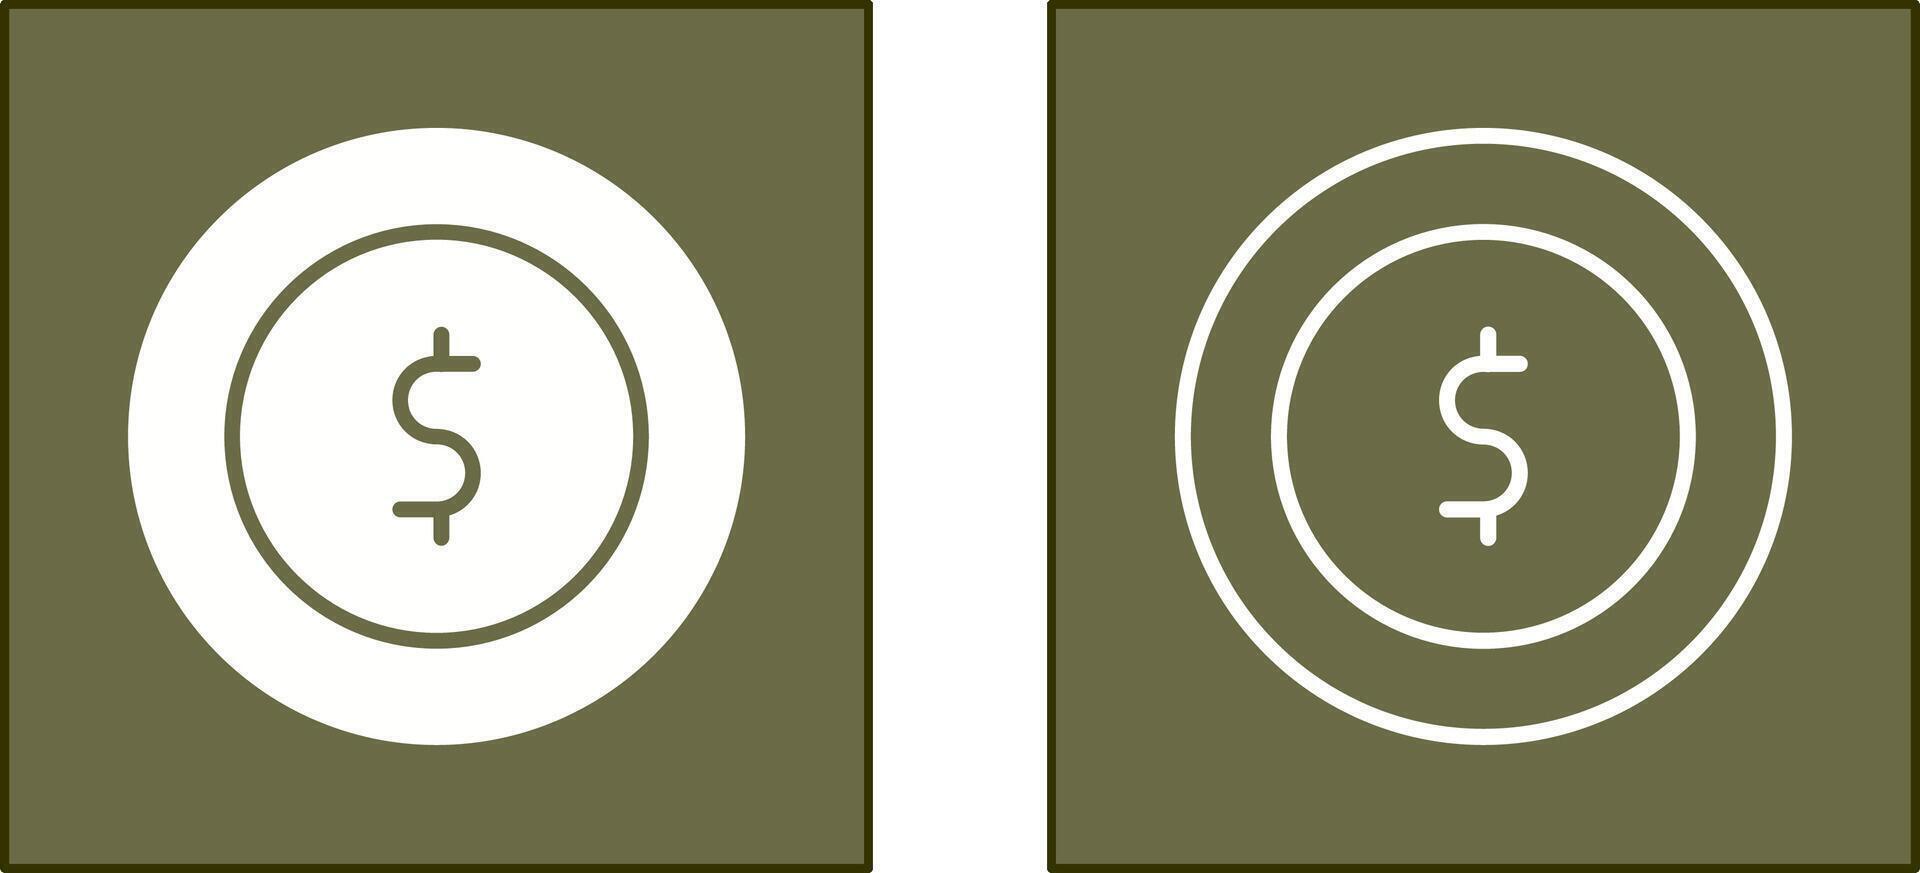 diseño de icono de monedas vector